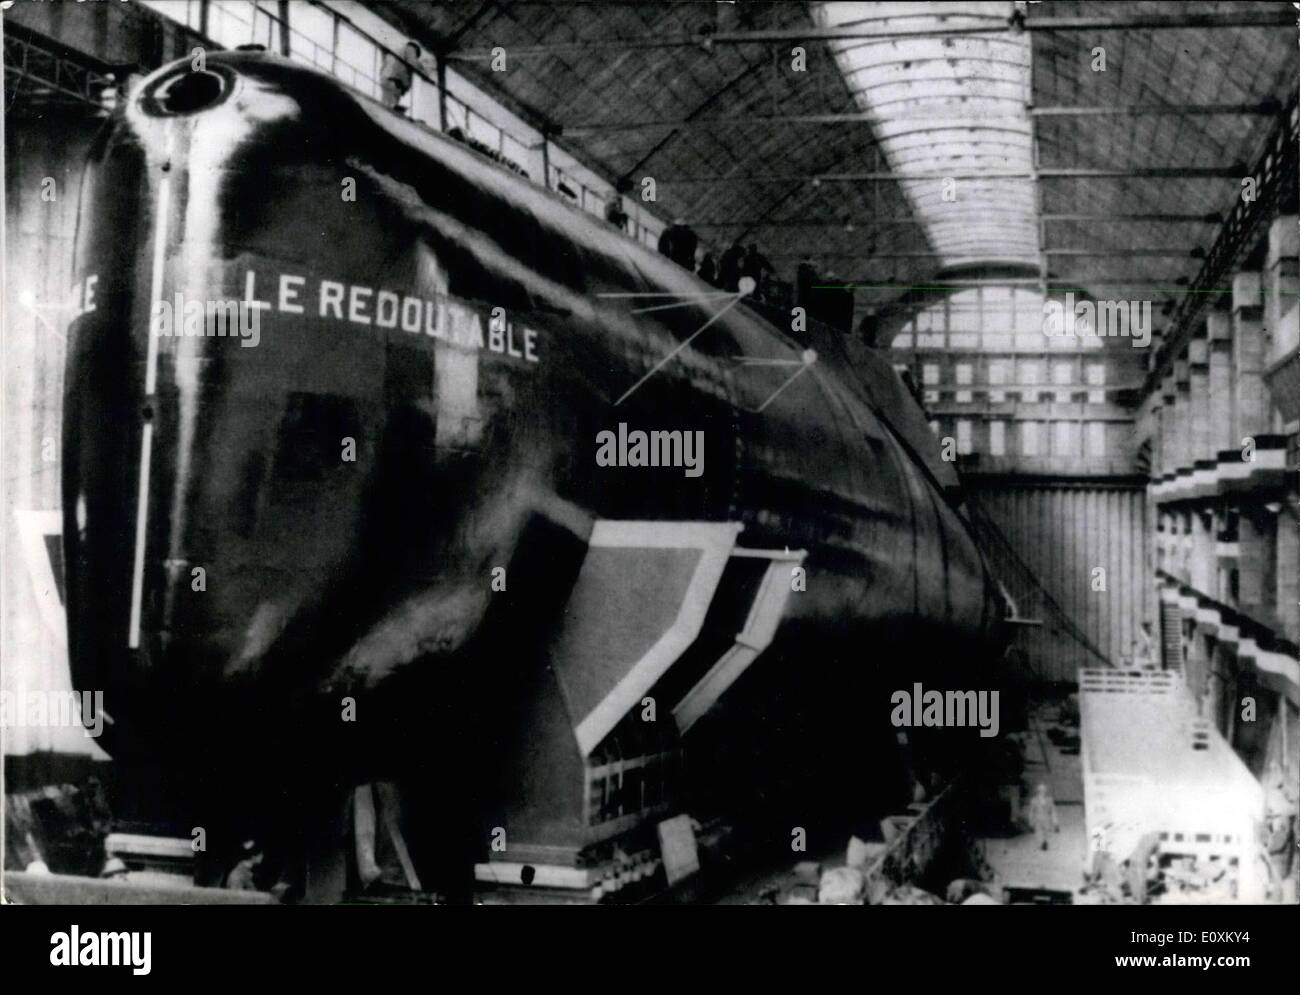 20. März 1967 - Frankreichs erste atomare u-Boot, '' Le Redoutable,'' am 29. März in Anwesenheit von General de Gaulle startet. Es wird die erste offizielle Reise des französischen Präsidenten für das Jahr 1967 sein. Stockfoto